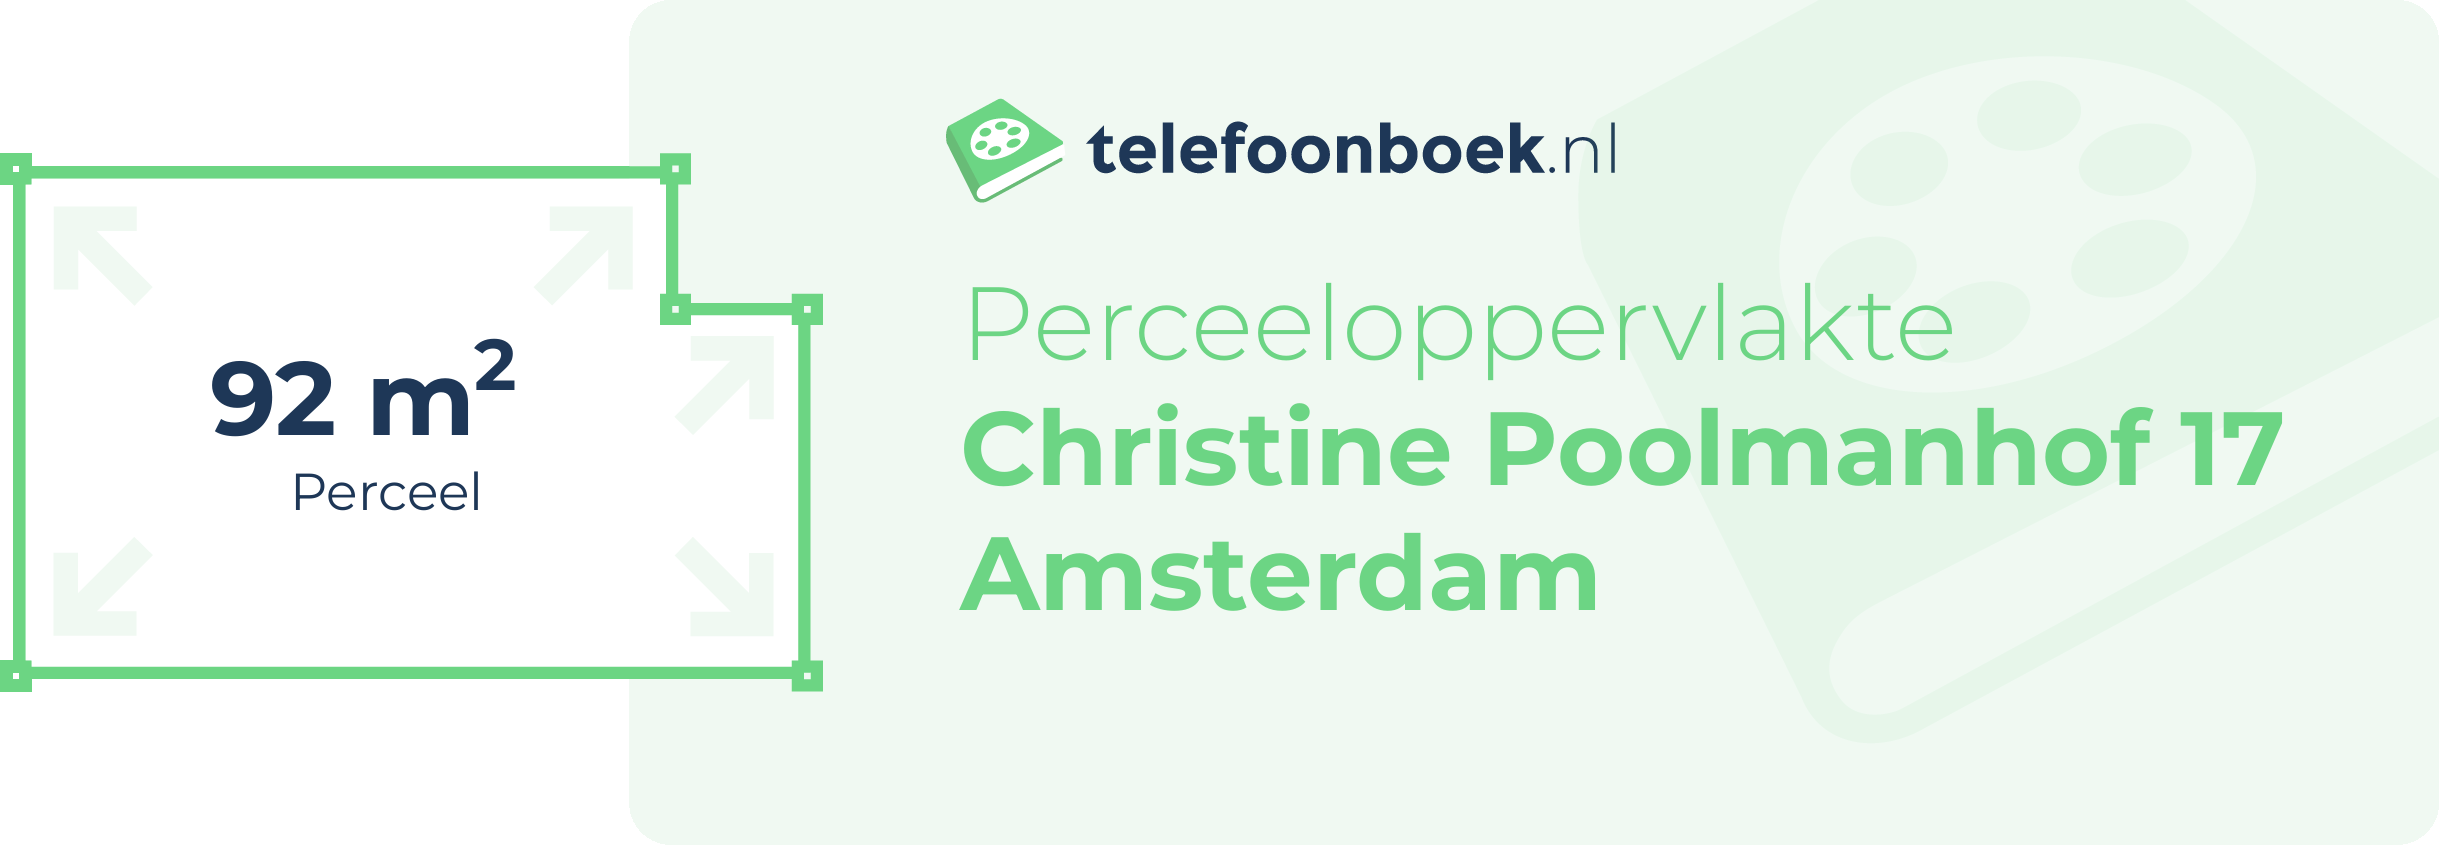 Perceeloppervlakte Christine Poolmanhof 17 Amsterdam